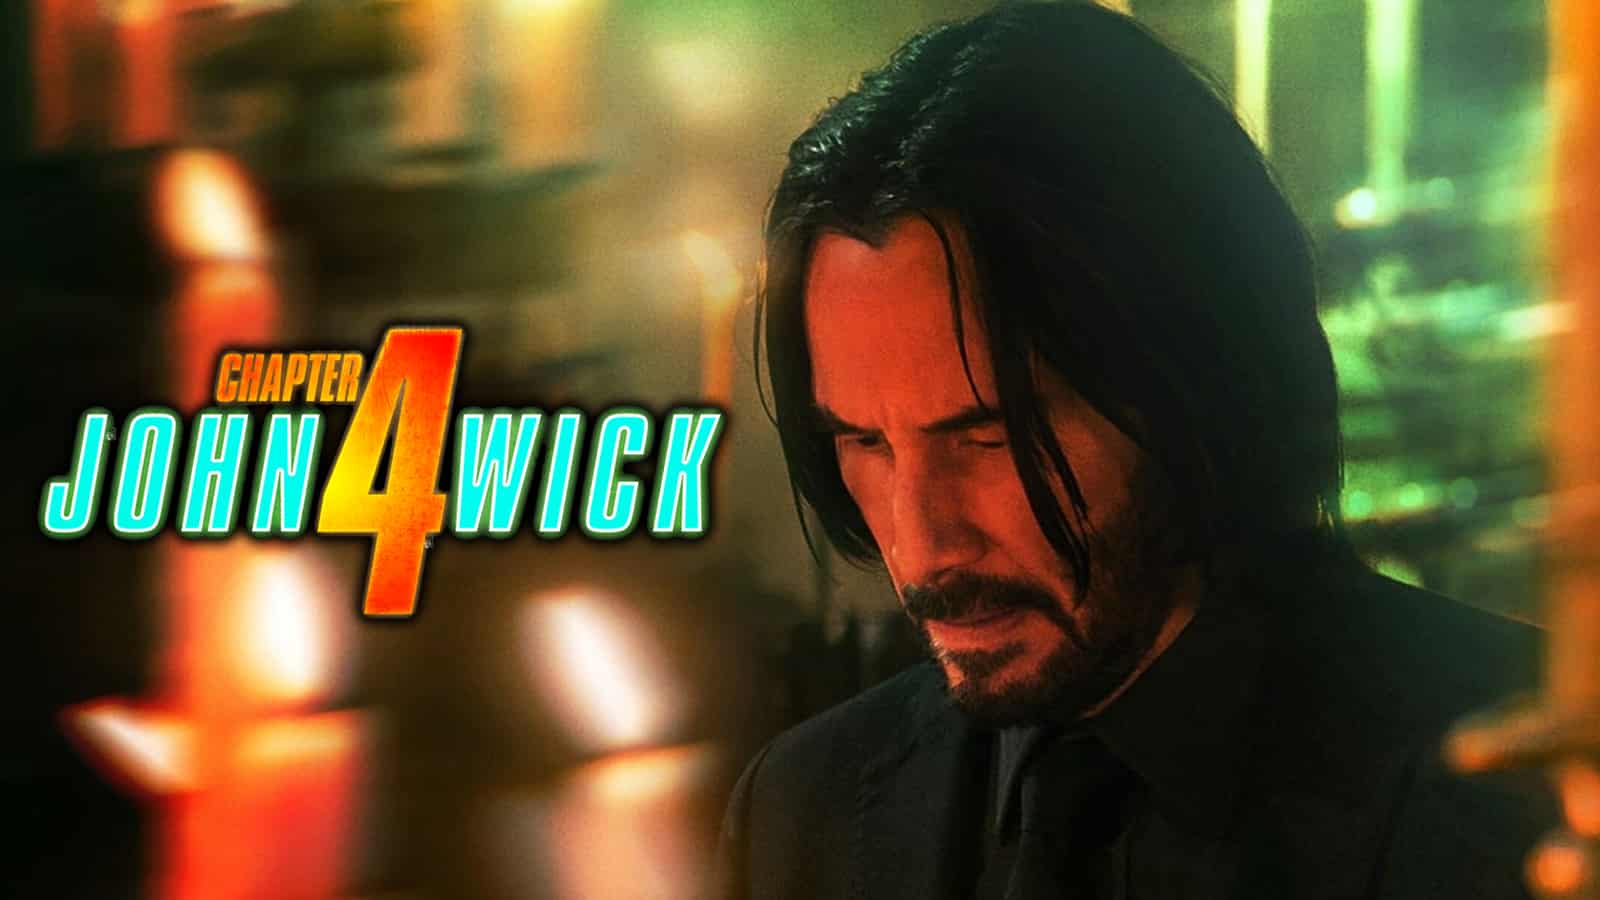 An image of Keanu Reeves in John Wick 4